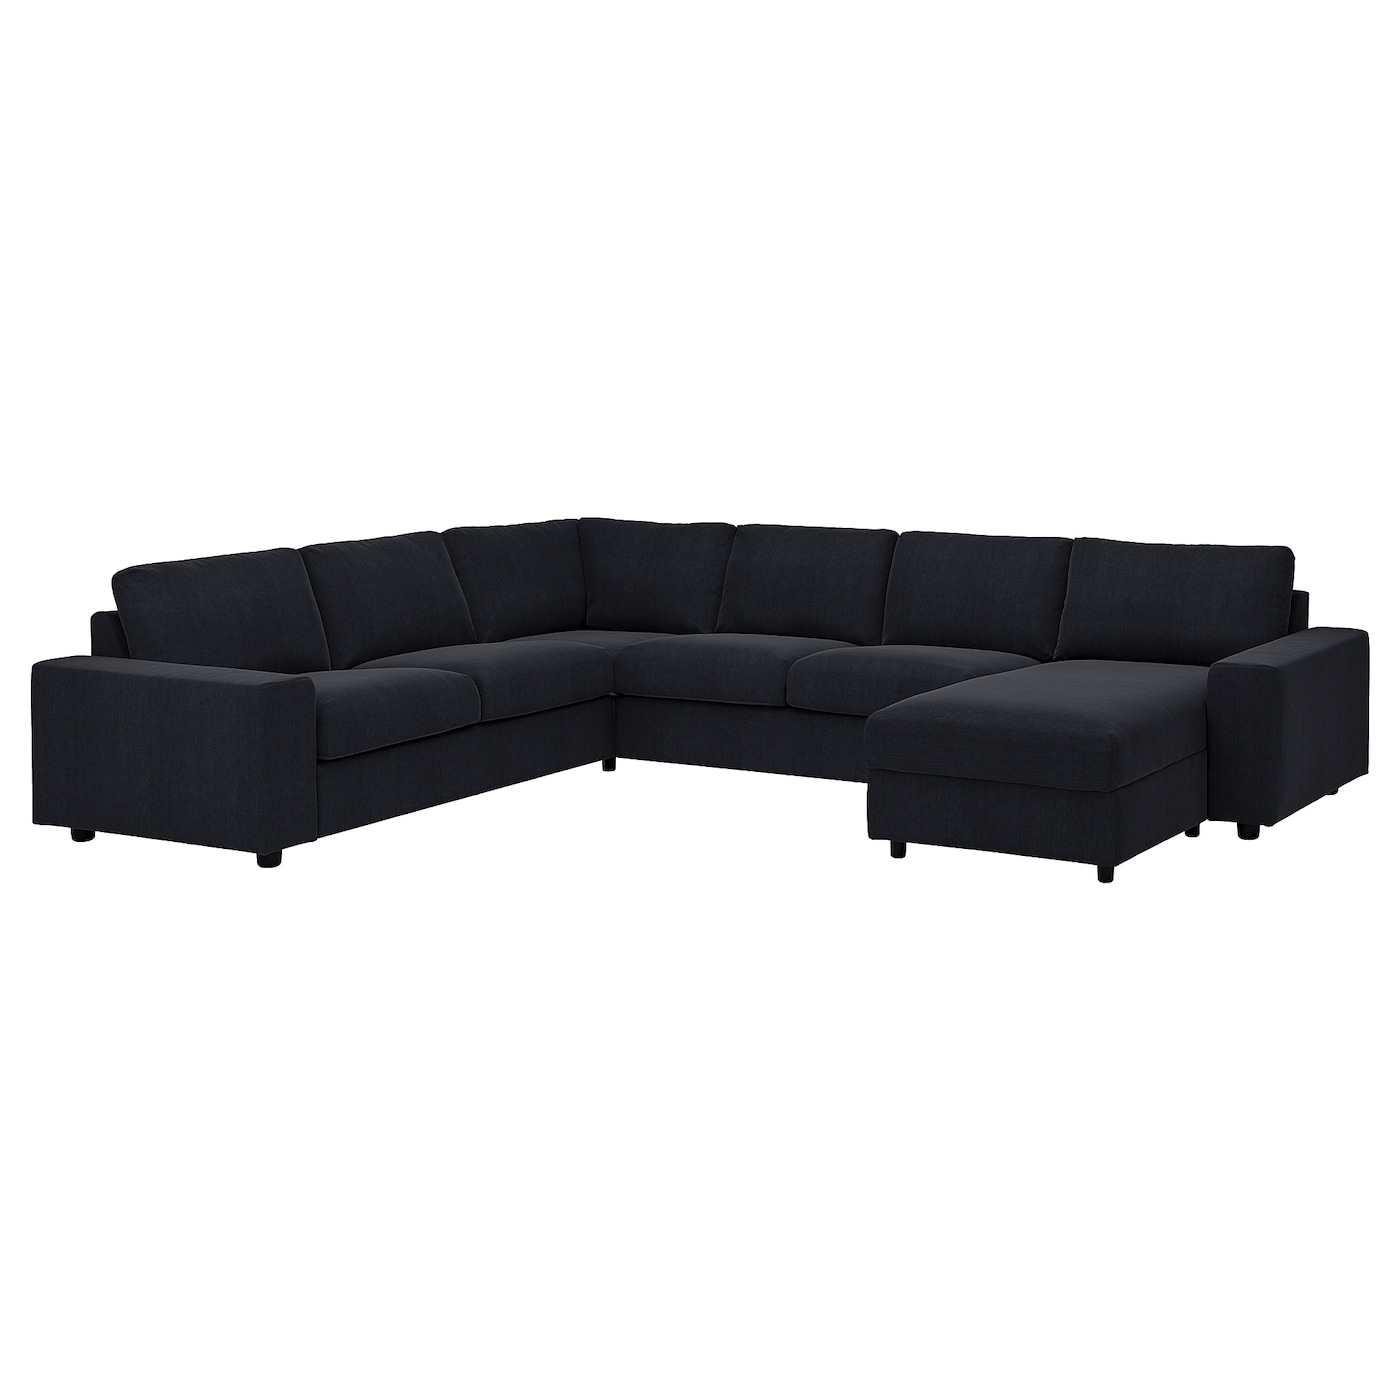 ВИМЛЕ Диван угловой, 5-местный. диван+диван, с широкими подлокотниками/Saxemara черно-синий VIMLE IKEA